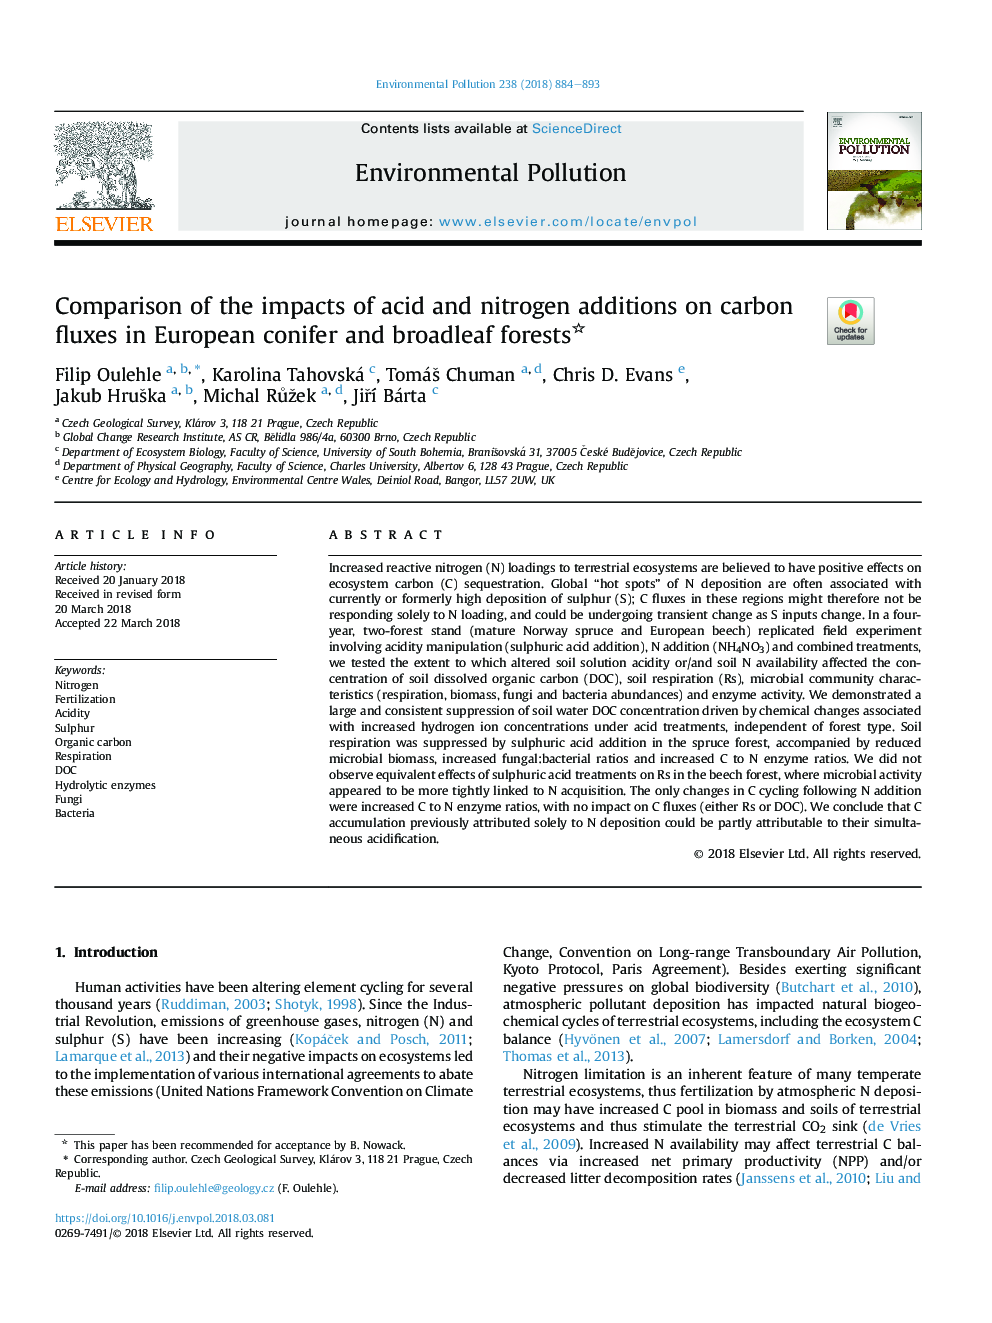 مقایسه تاثیر افزودن اسید و نیتروژن بر فرایندهای کربنی در جنگلهای کوه سیاه و جنگلهای اروپایی 